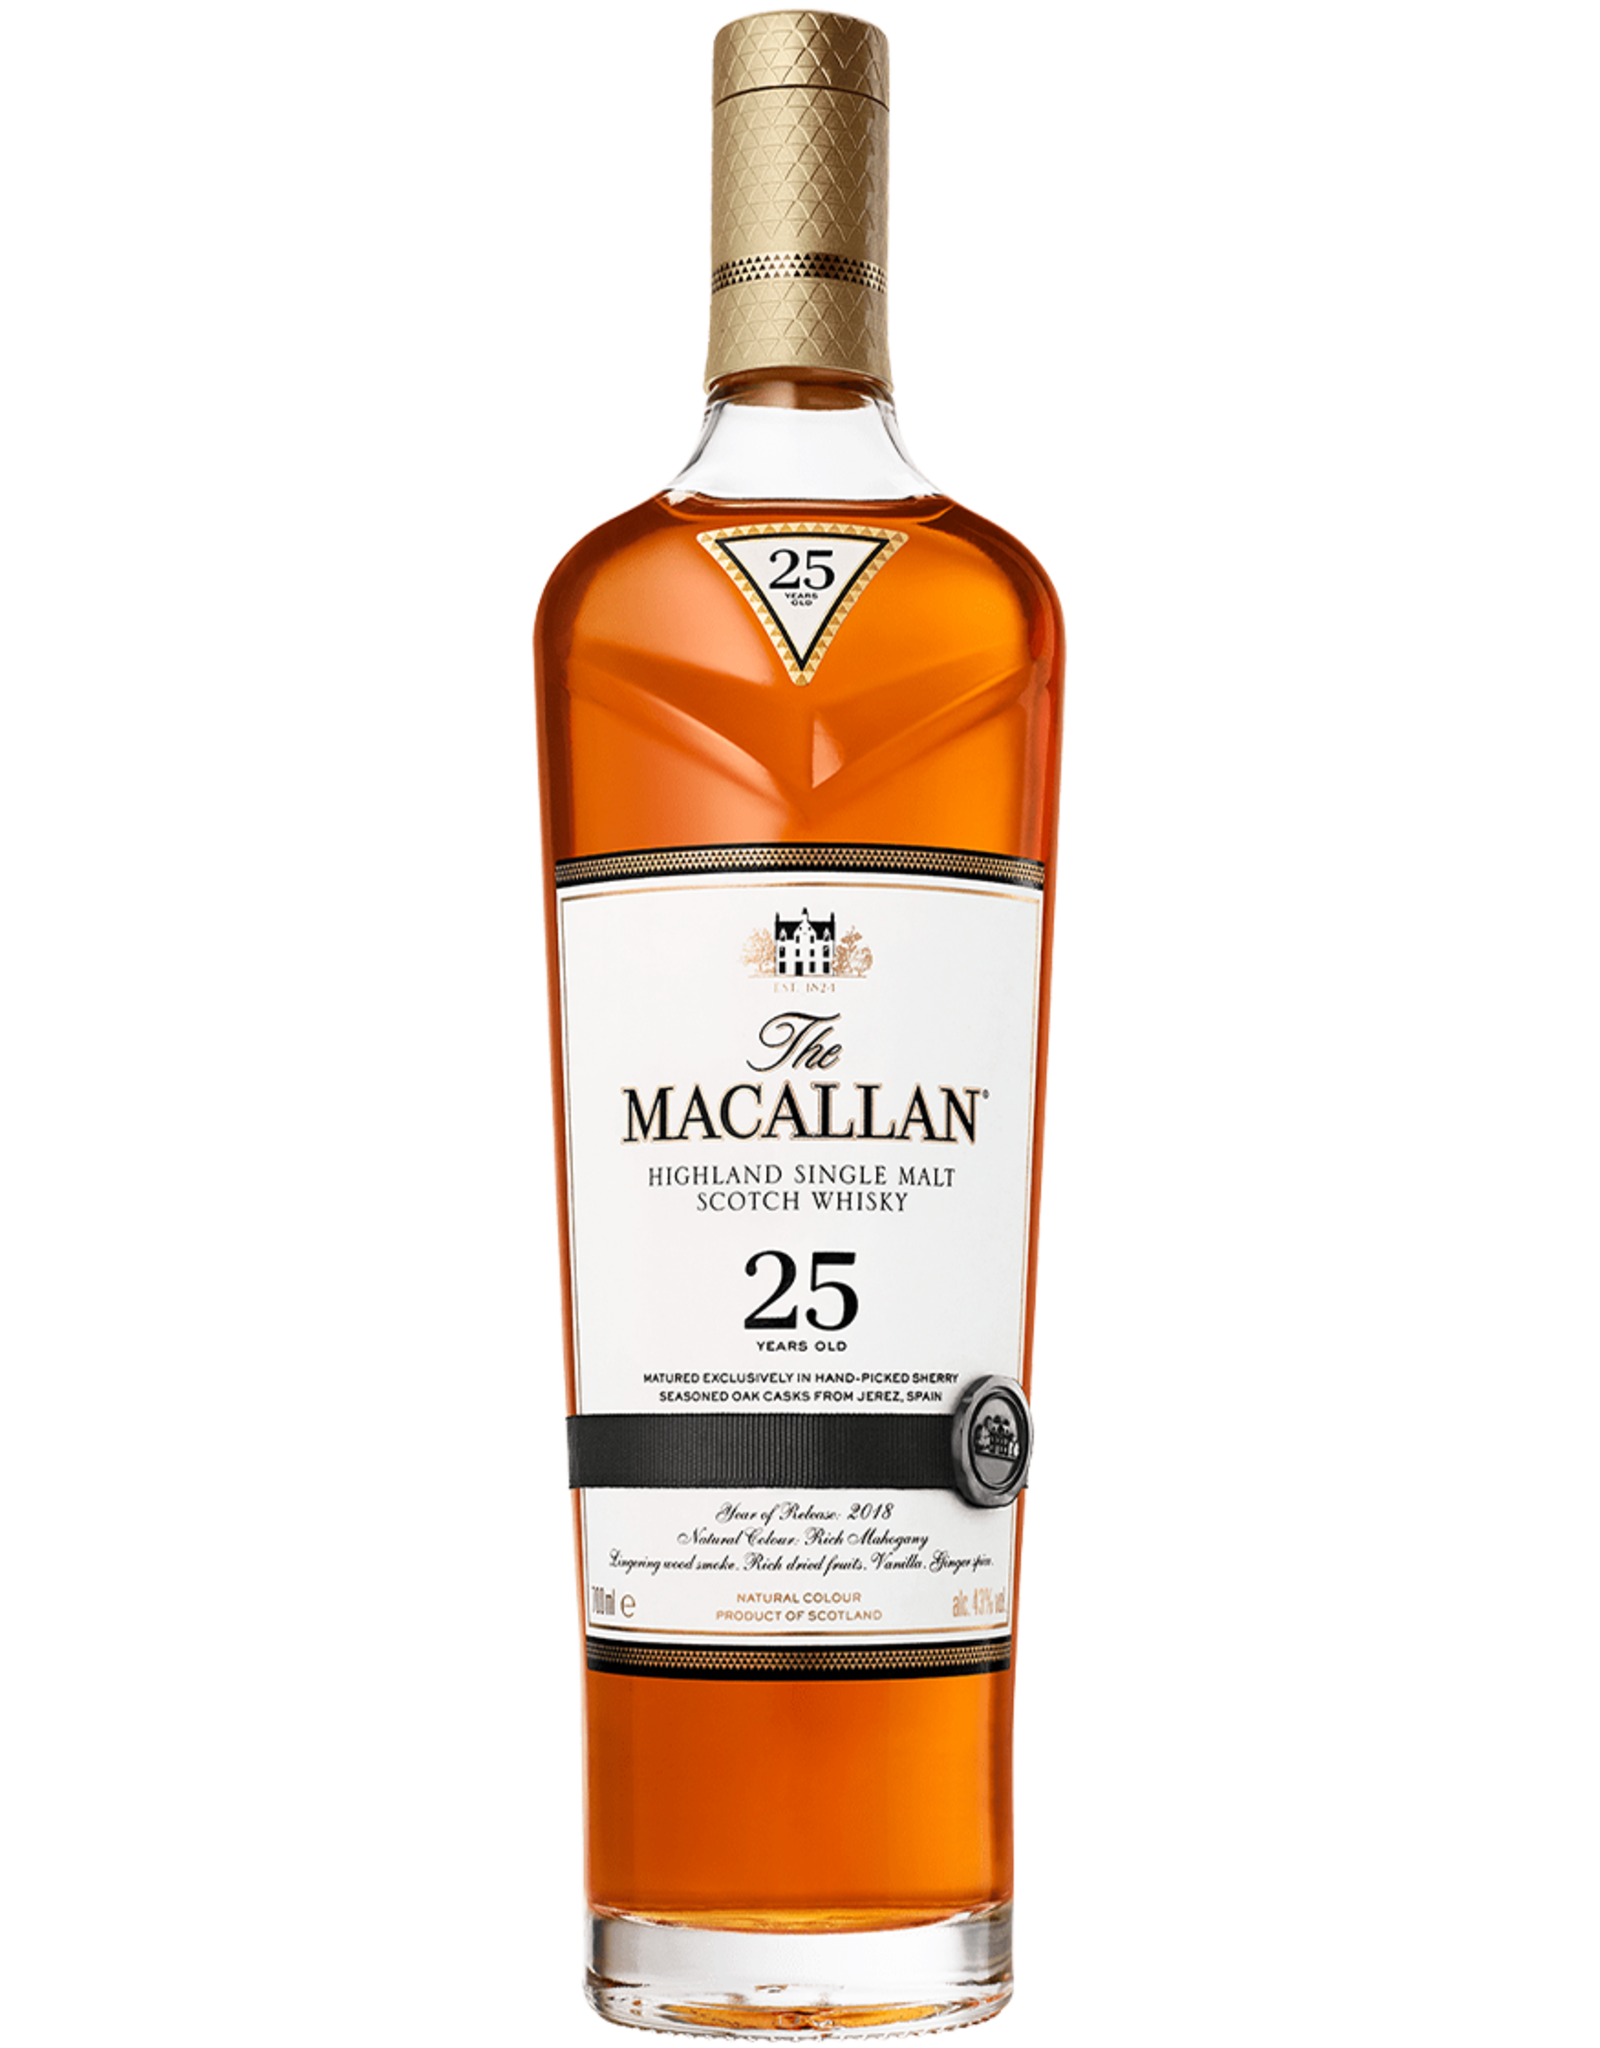 The Macallan 25 year